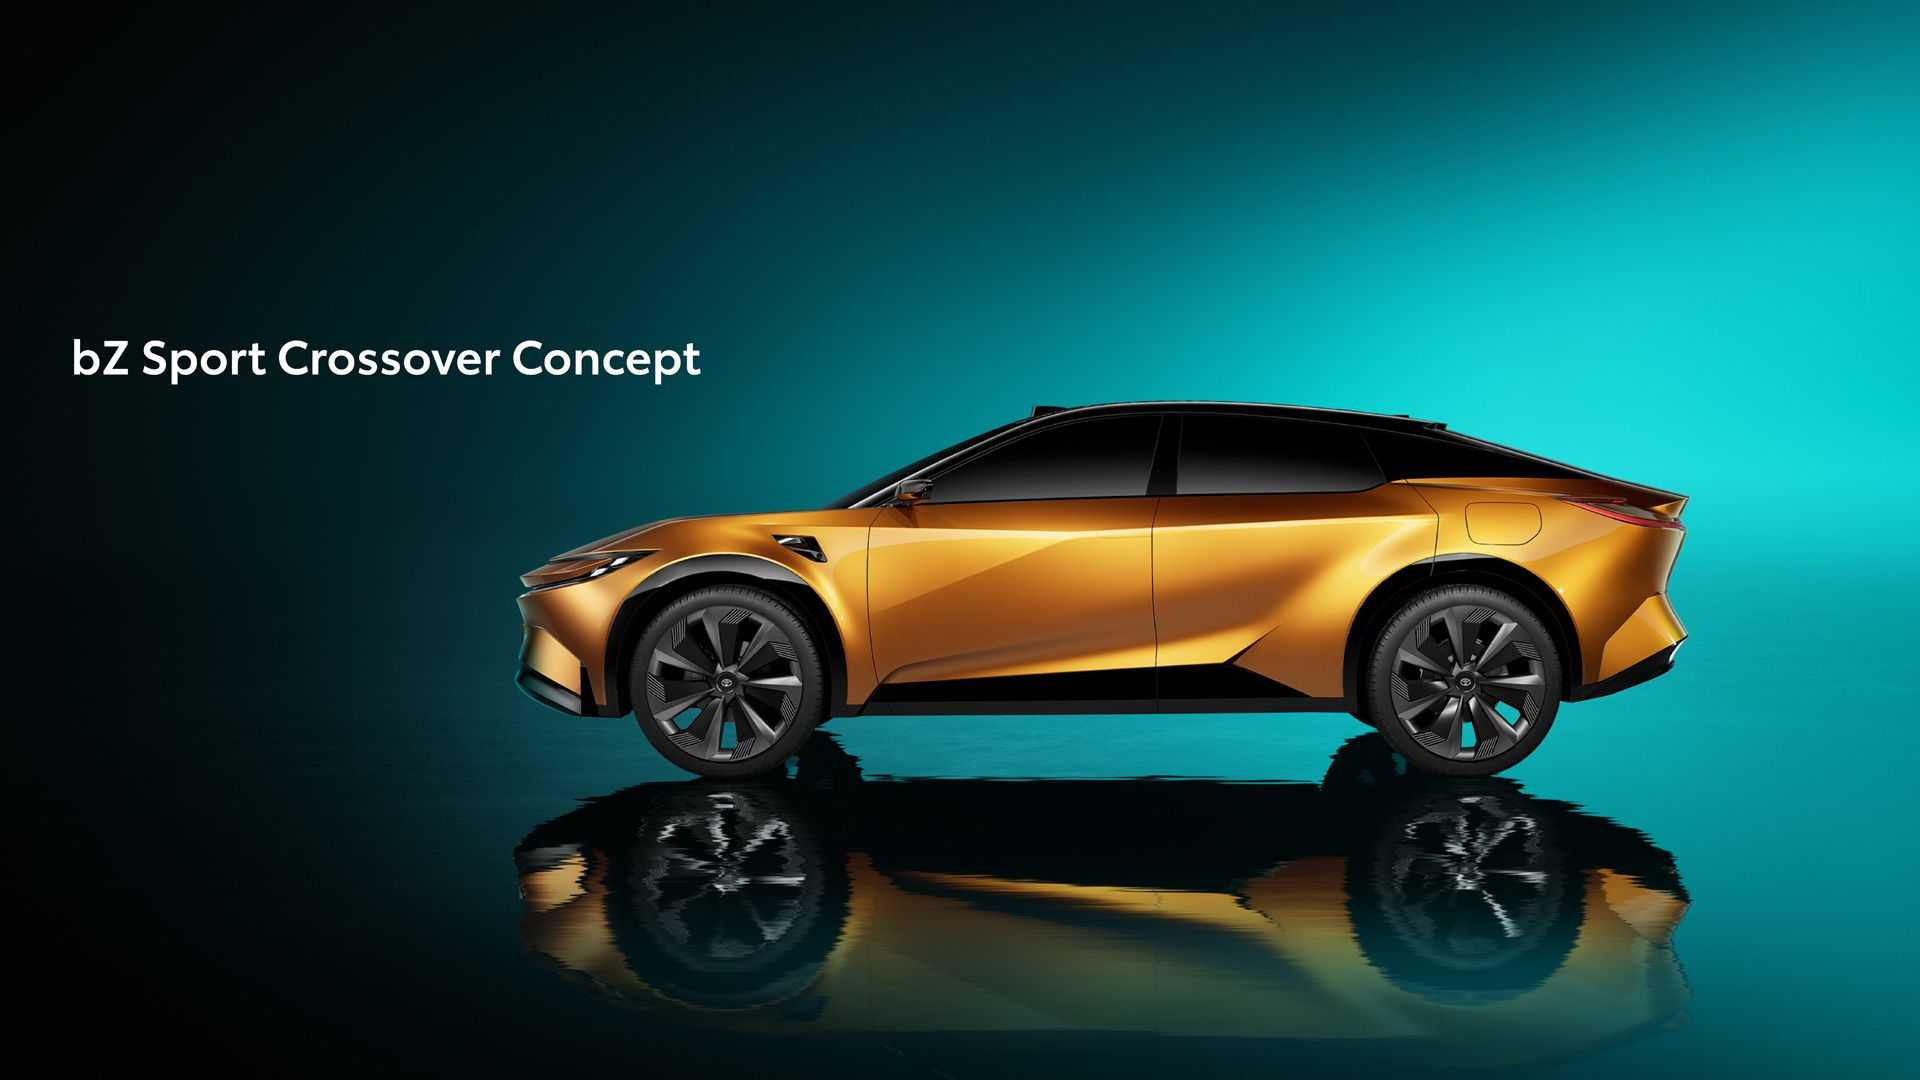 В 2026 году появятся электромобили Toyota с запасом хода 800 км